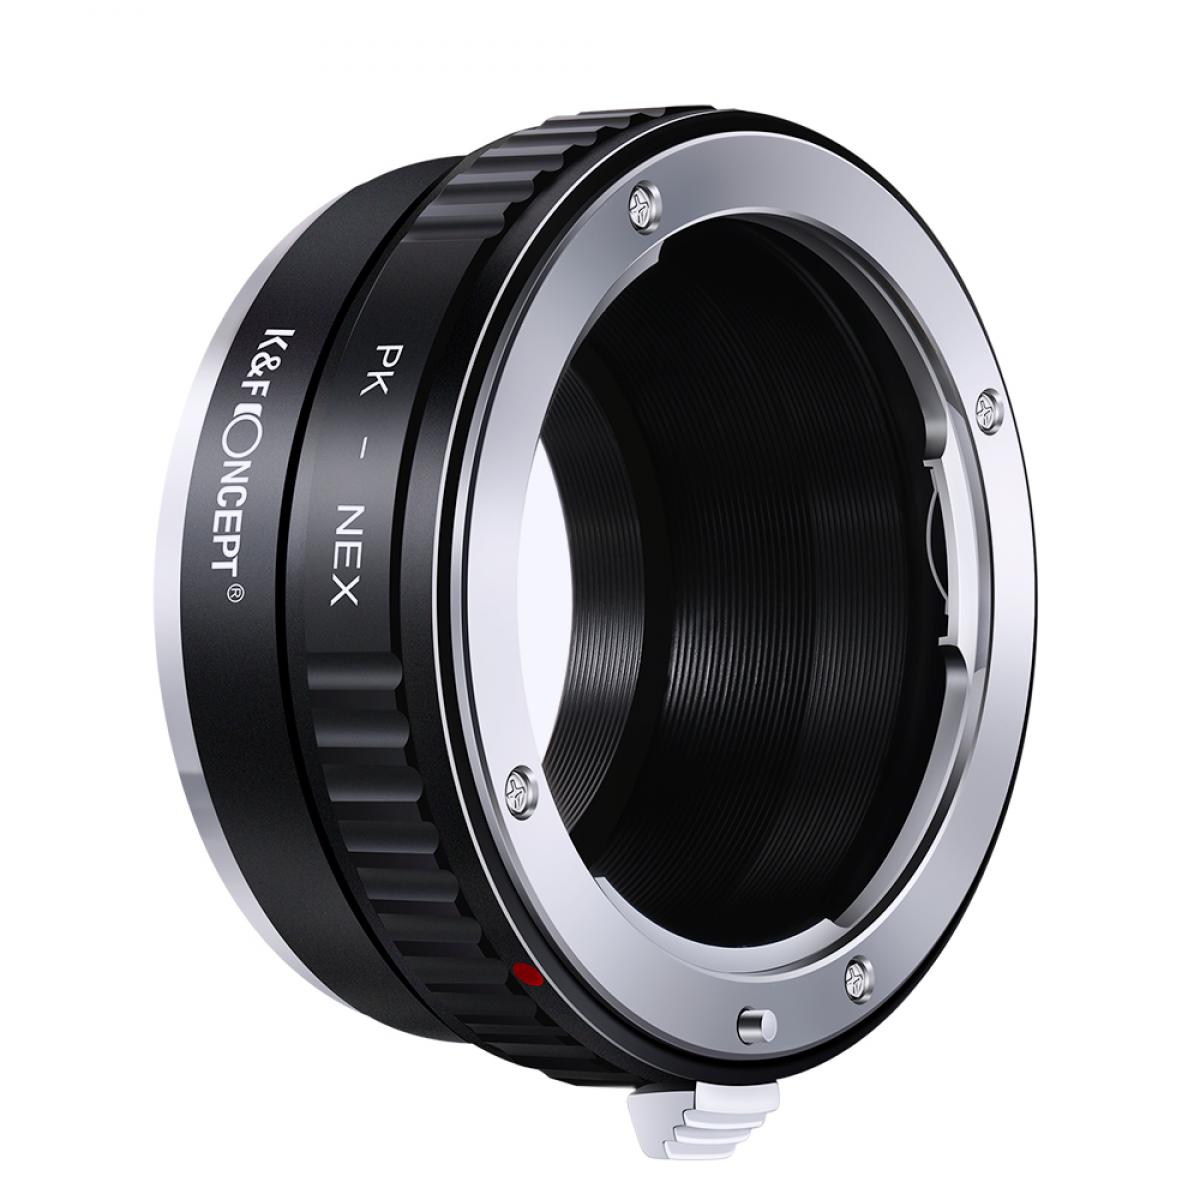 K&F Concept Lens Adapter KF06.075P for PK - NEX